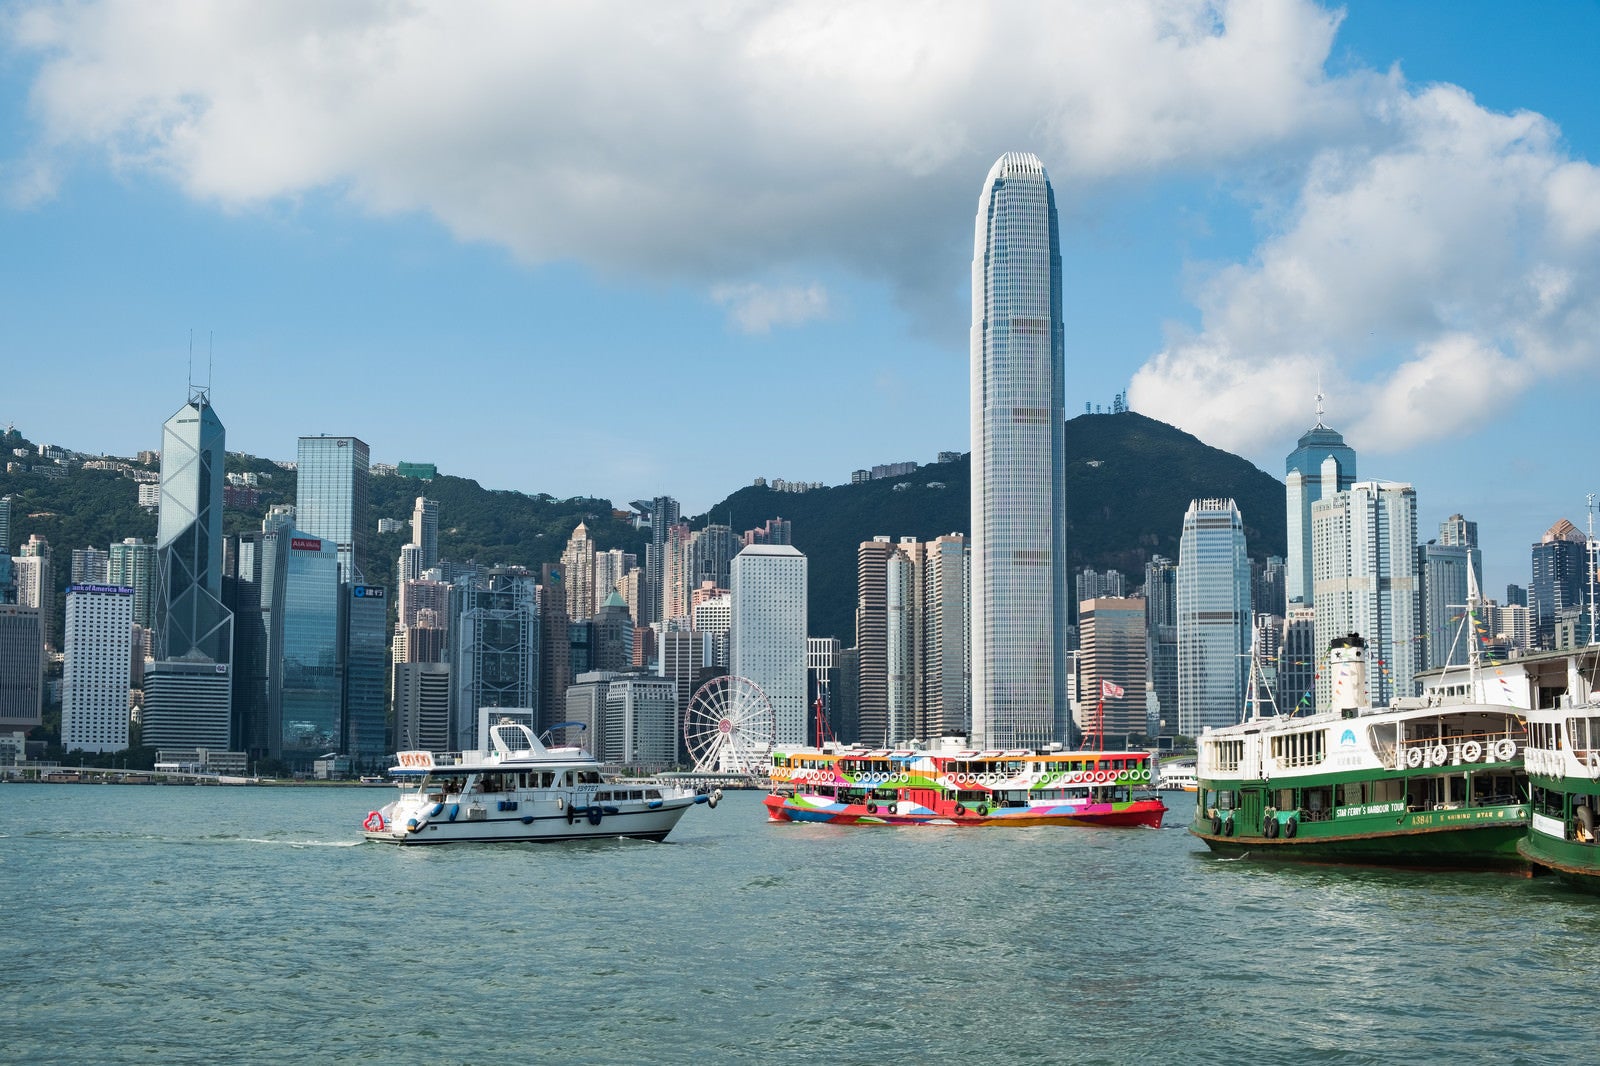 「香港のビル群と遊覧船」の写真